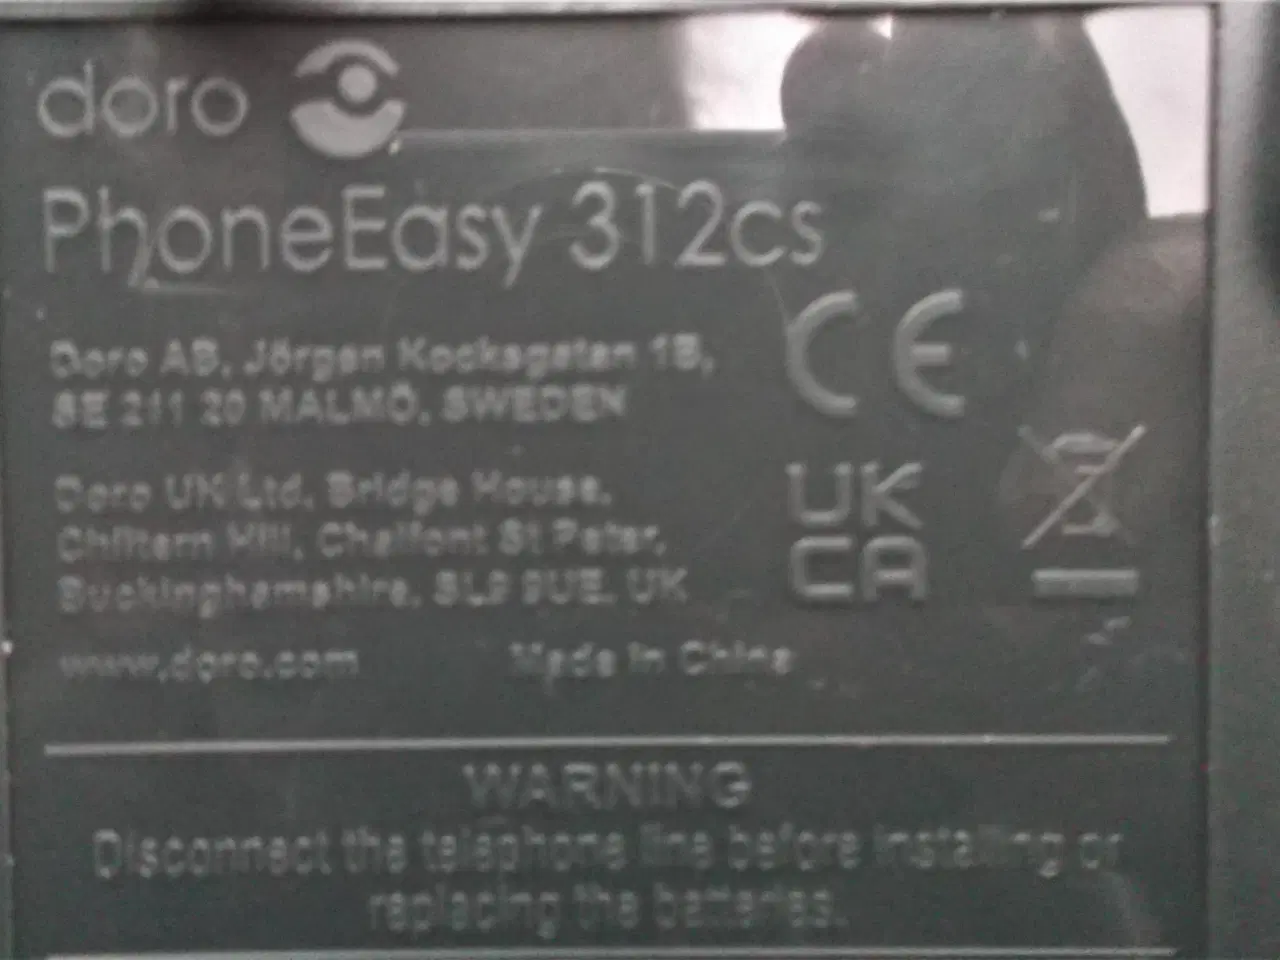 Billede 3 - Doro PhoneEasy 312cs er en ældrevenlig telefon med